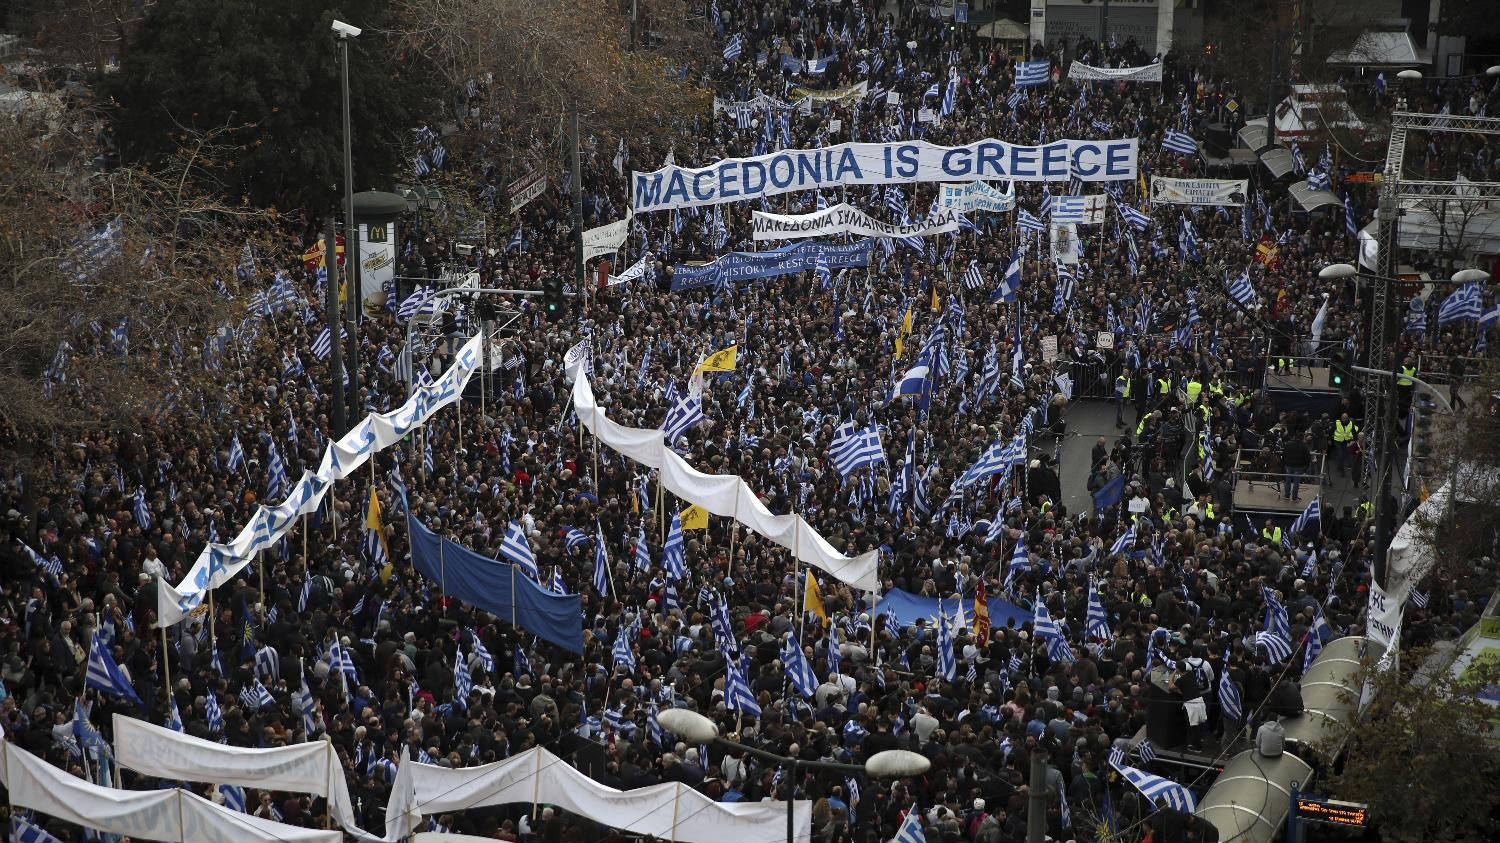 Zbog napetosti u Grčkoj Makedonija ispada žrtva 1